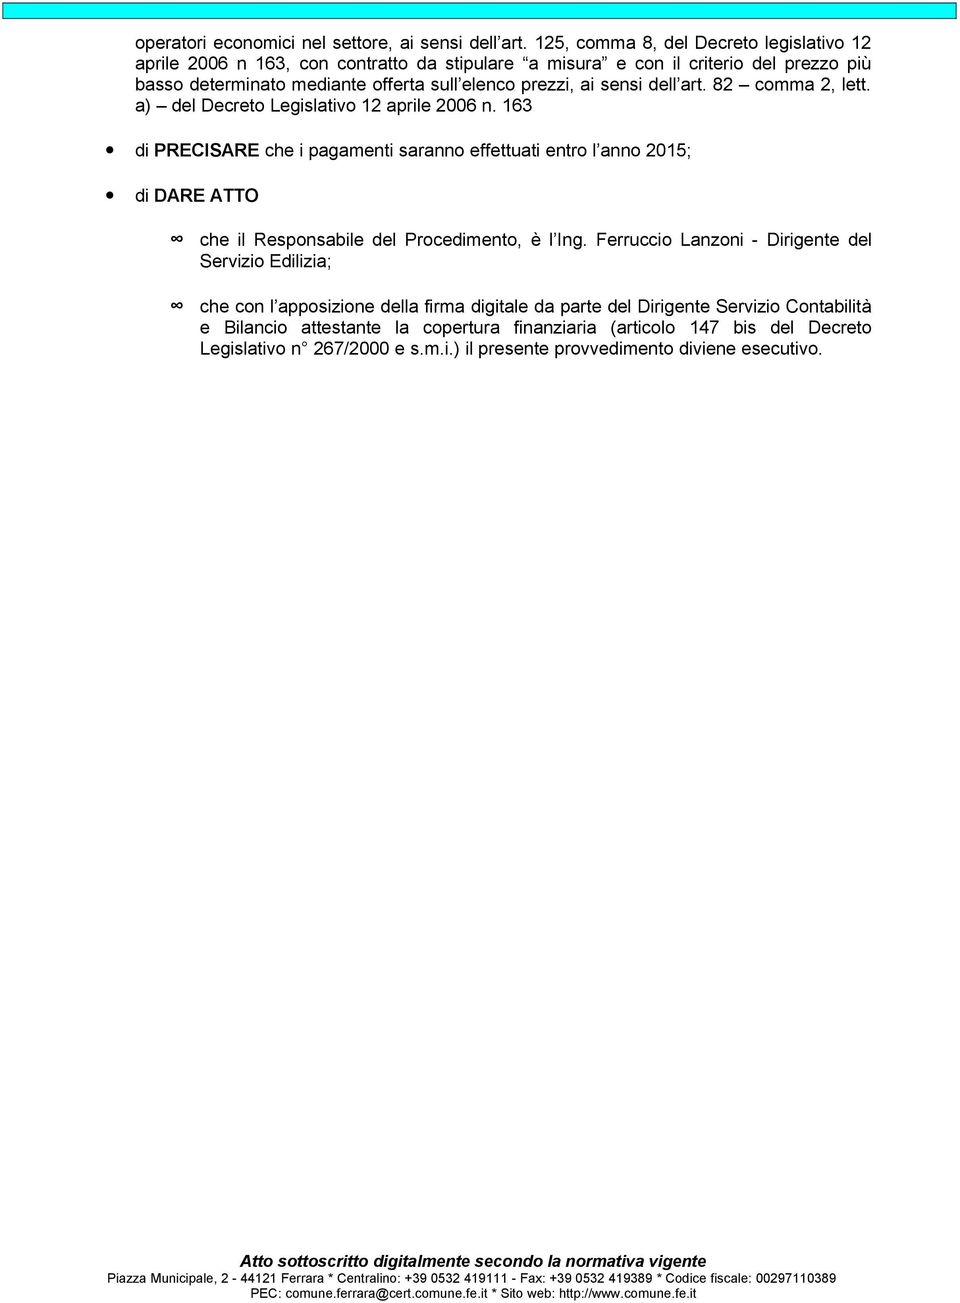 ai sensi dell art. 82 comma 2, lett. a) del Decreto Legislativo 12 aprile 2006 n.